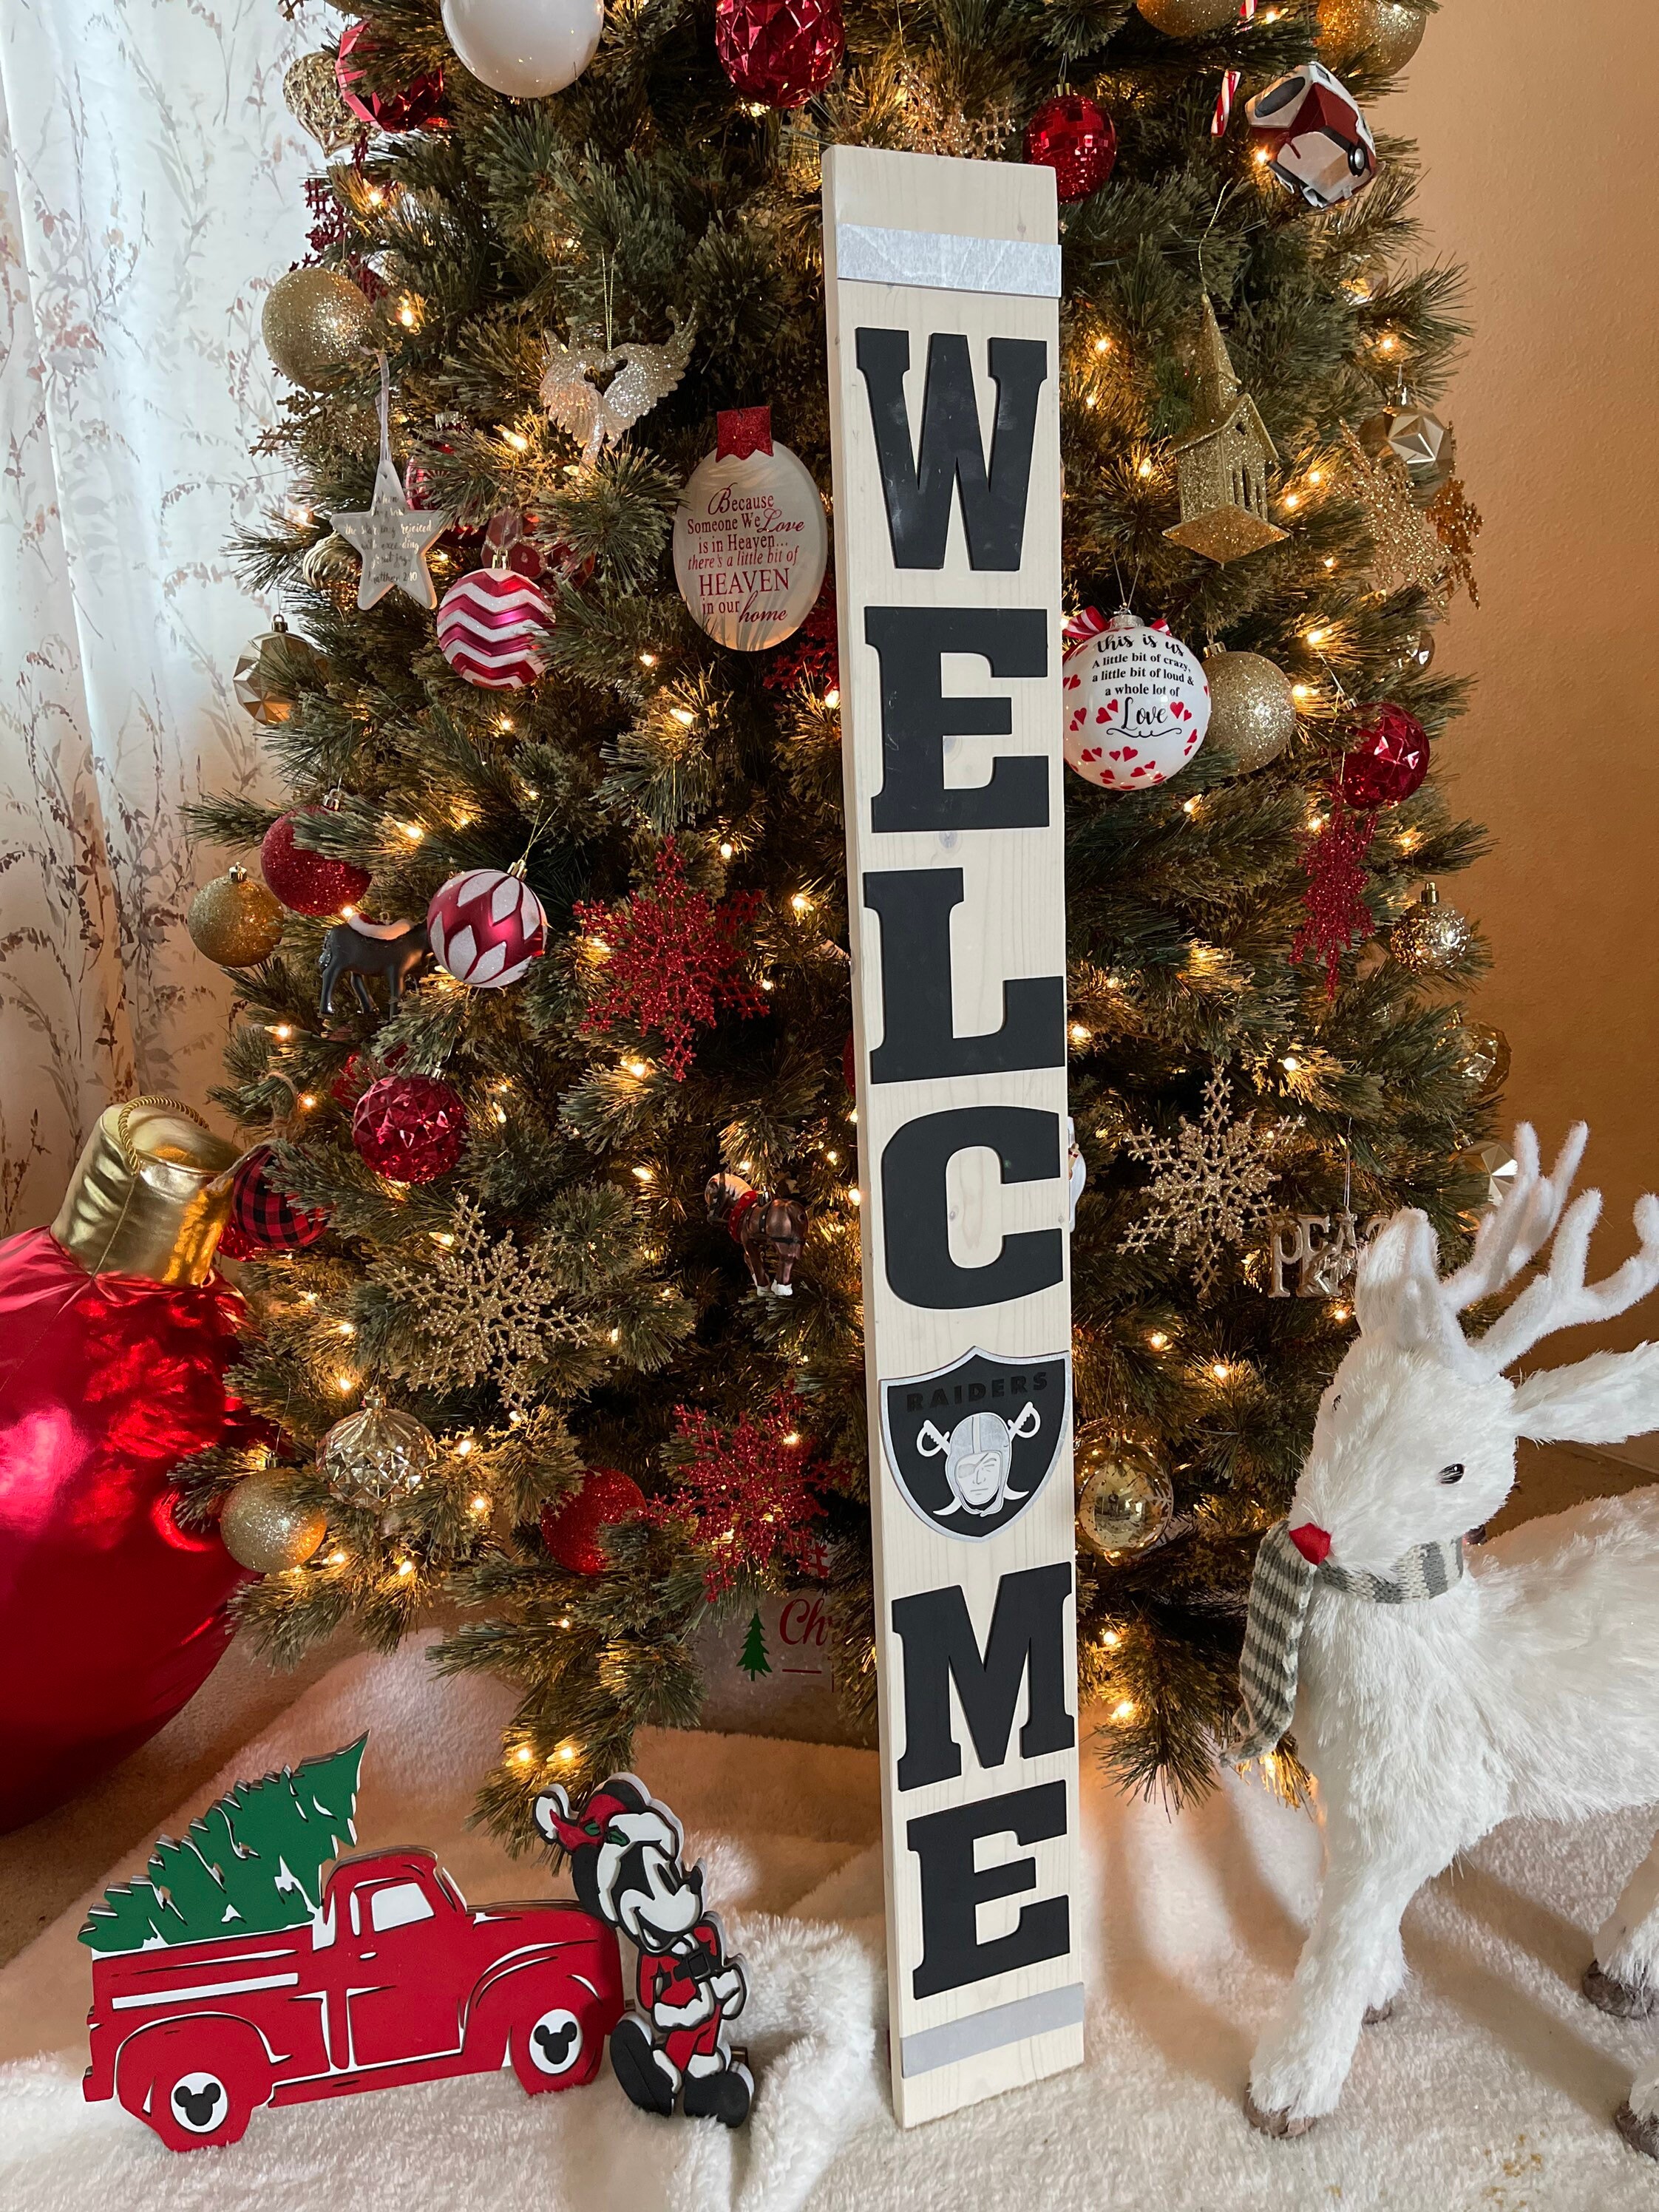 Las Vegas Raiders Skyline NFL Area Rug, Bedroom, Christmas Gift US Decor -  Travels in Translation